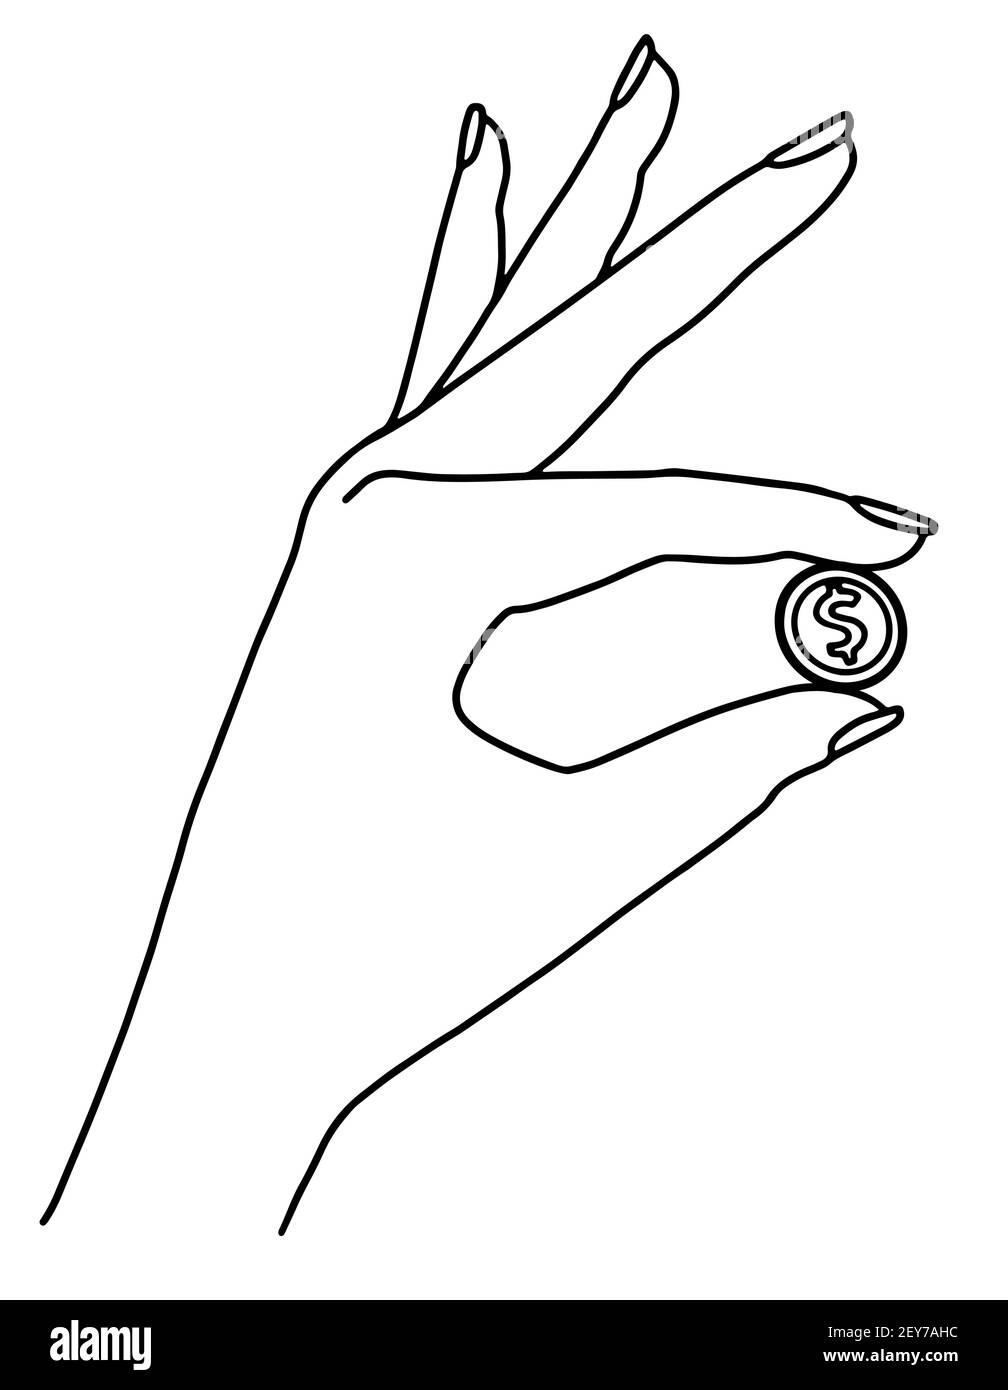 Mano femenina con línea de la moneda dibujando línea negra en blanco ilustración vectorial de fondo Ilustración del Vector